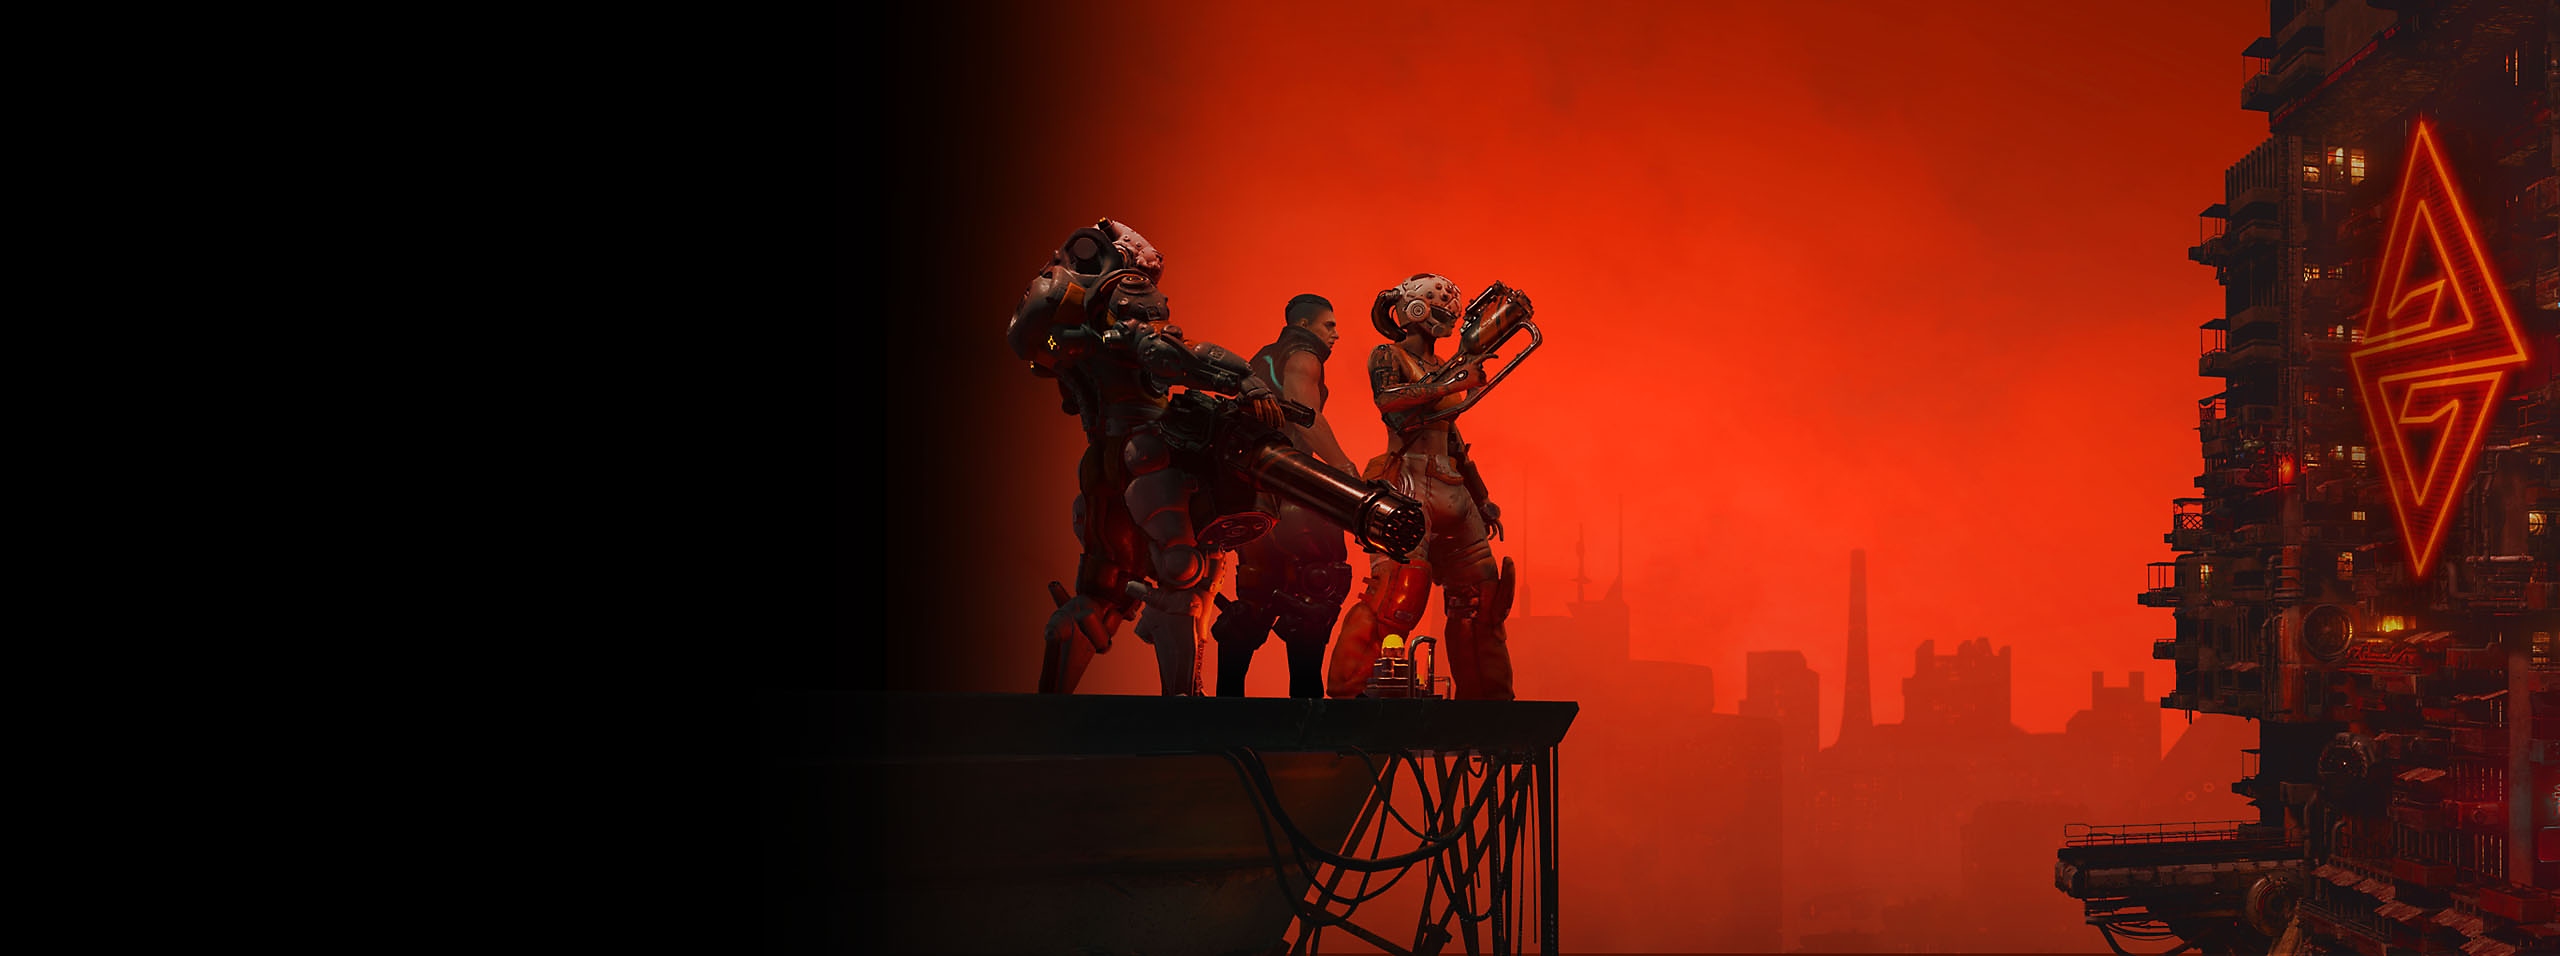 The Ascent - Arte de herói mostrando três personagens e horizonte sob céu vermelho 